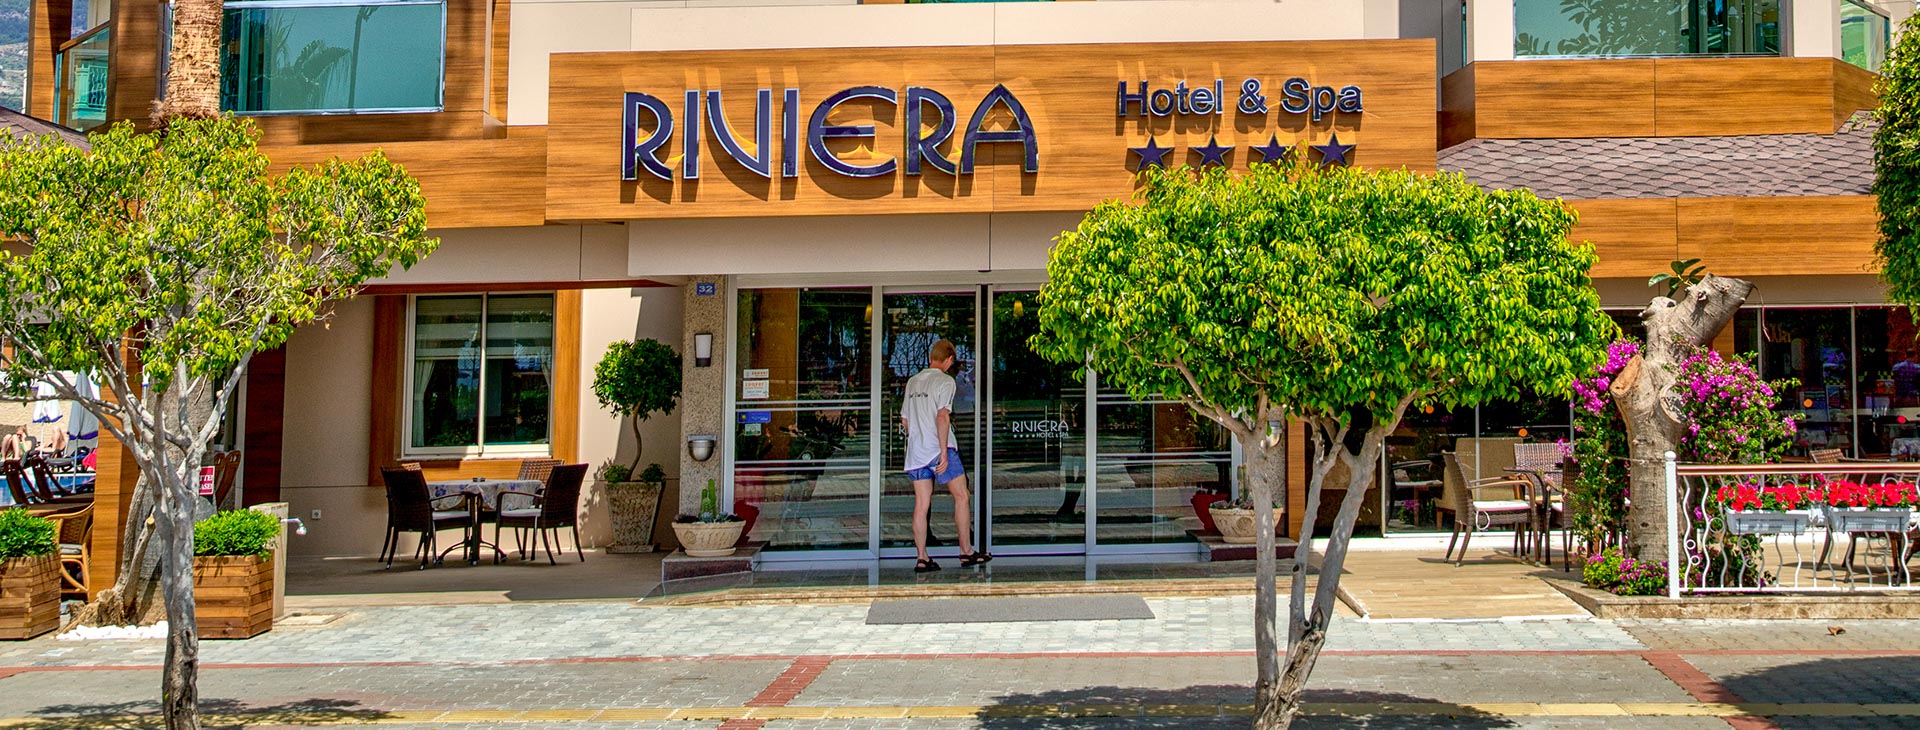 Riviera Hotel and Spa Obrázok1